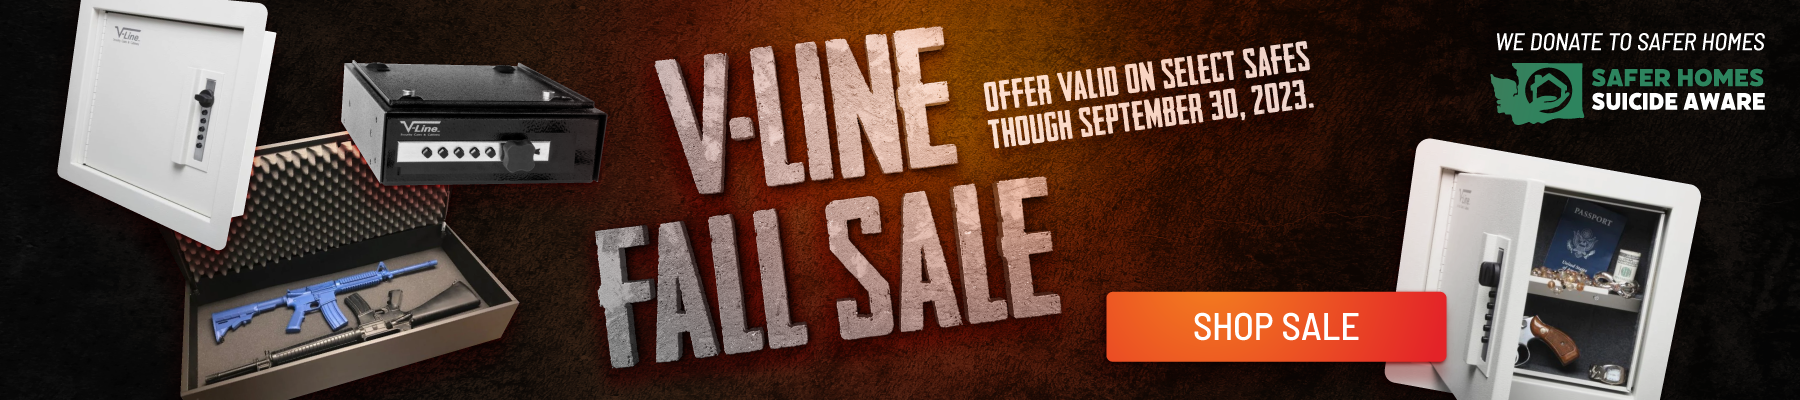 V-Line Fall Sale